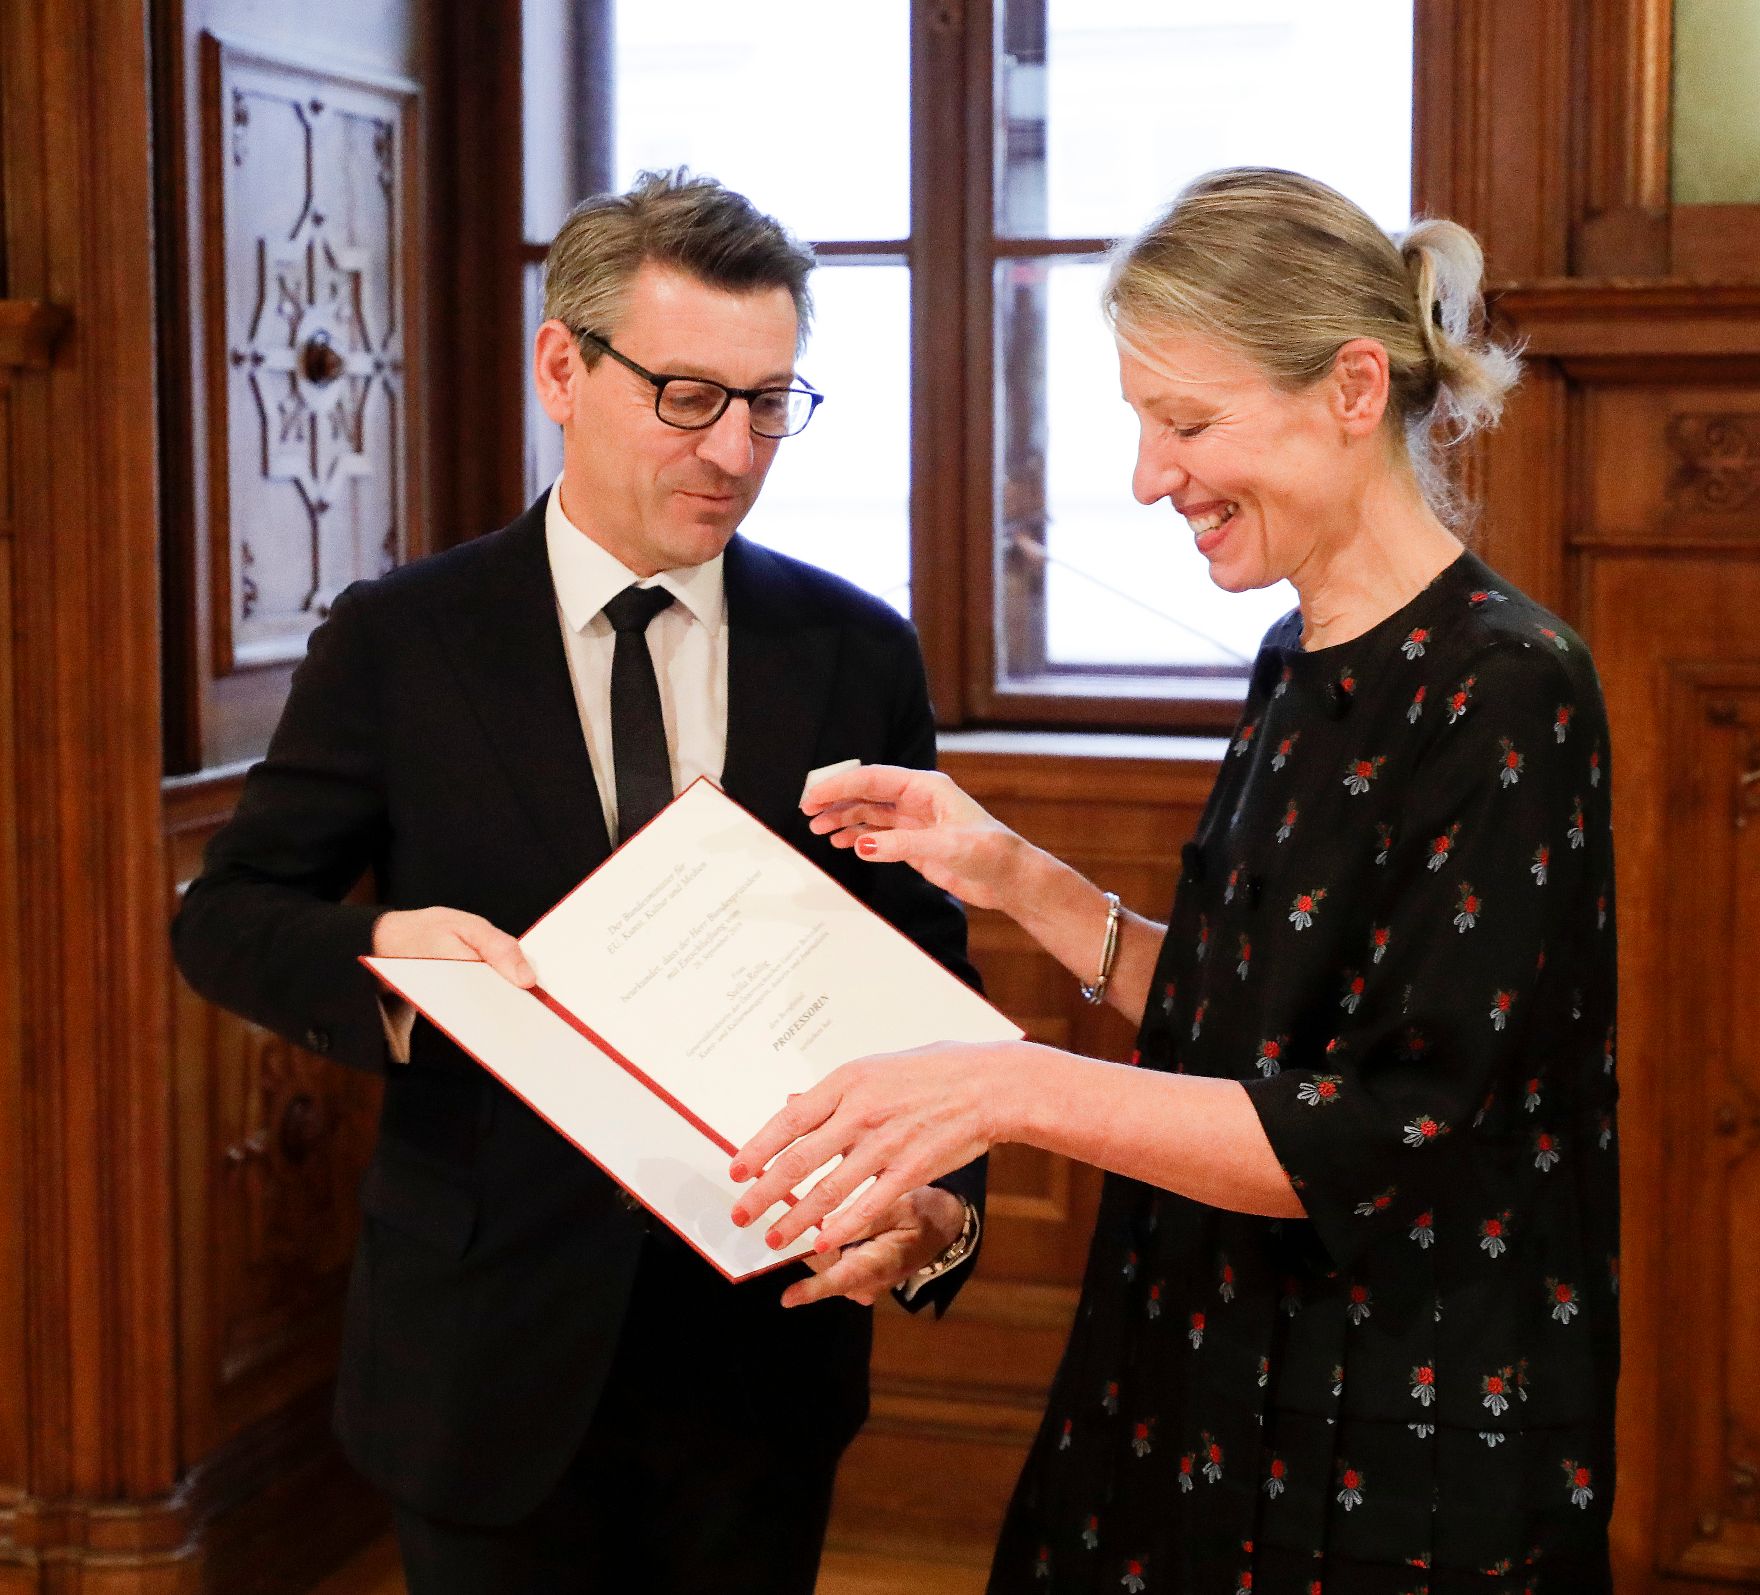 Am 2. Dezember 2019 überreichte Sektionschef Jürgen Meindl (l.) die Urkunde über die Verleihung des Berufstitels Professorin an Stella Rollig (r.).